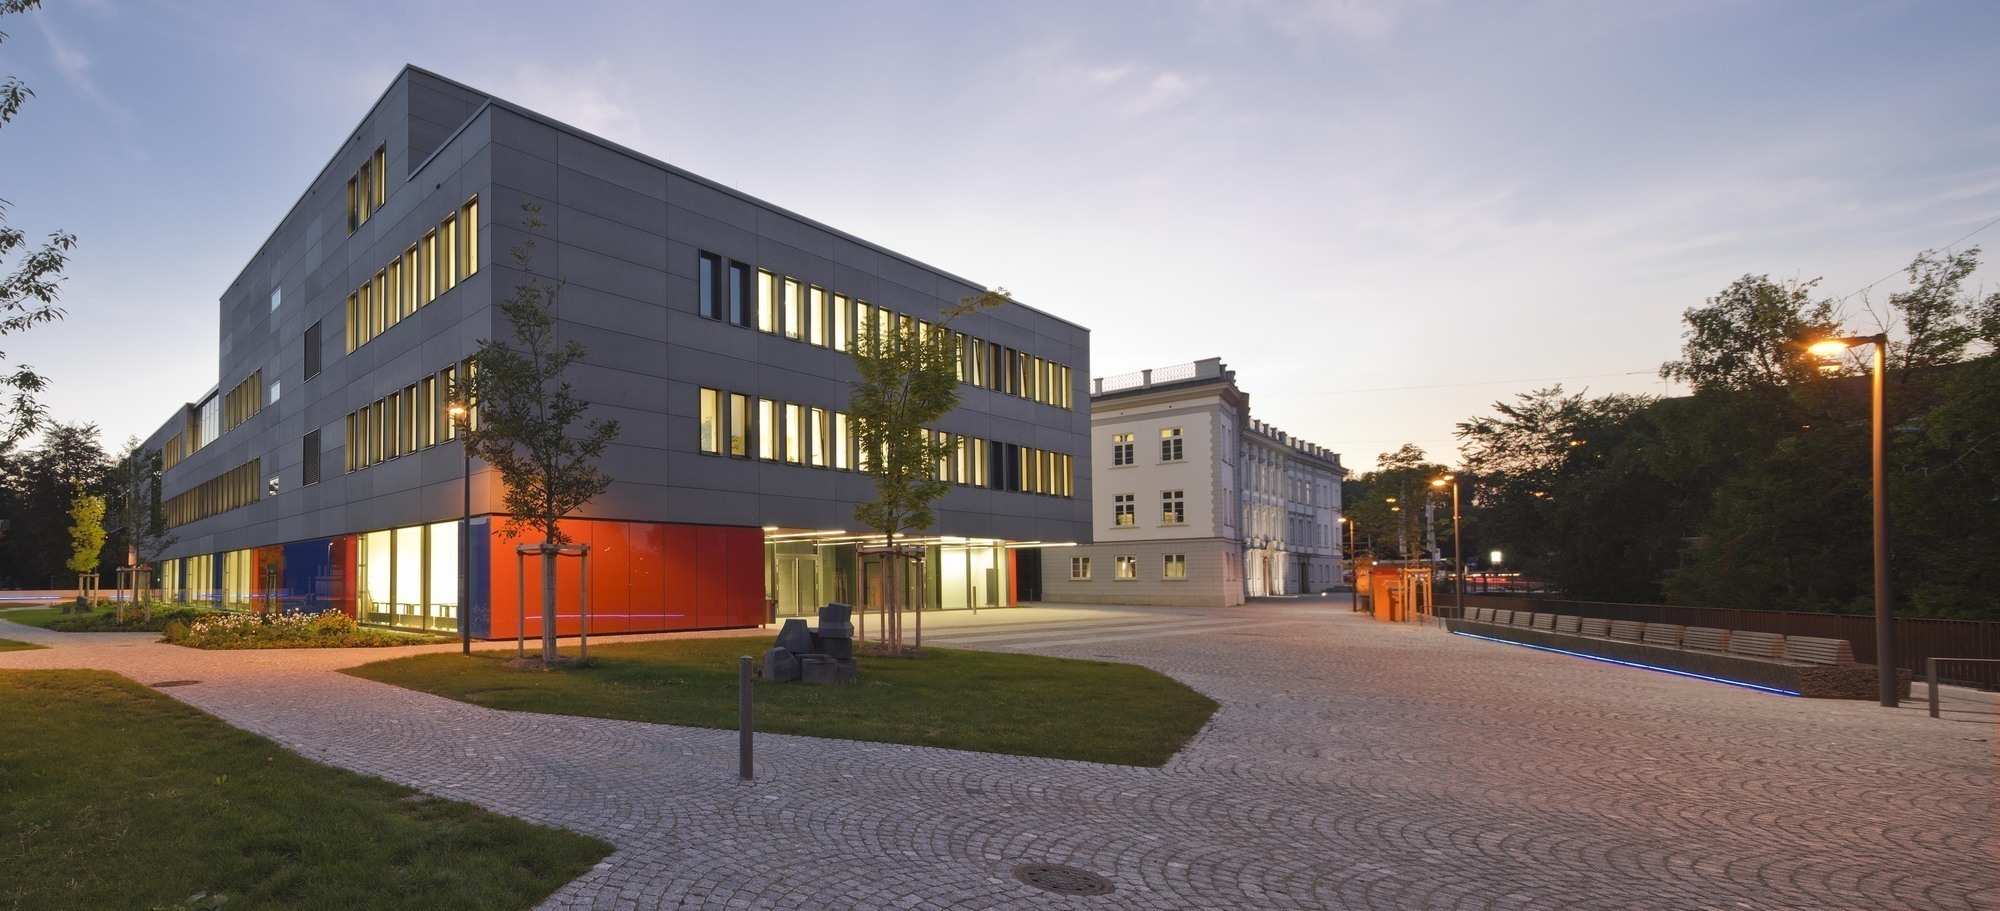 Am Campus der Technischen Hochschule Augsburg. Foto: Martin Duckek